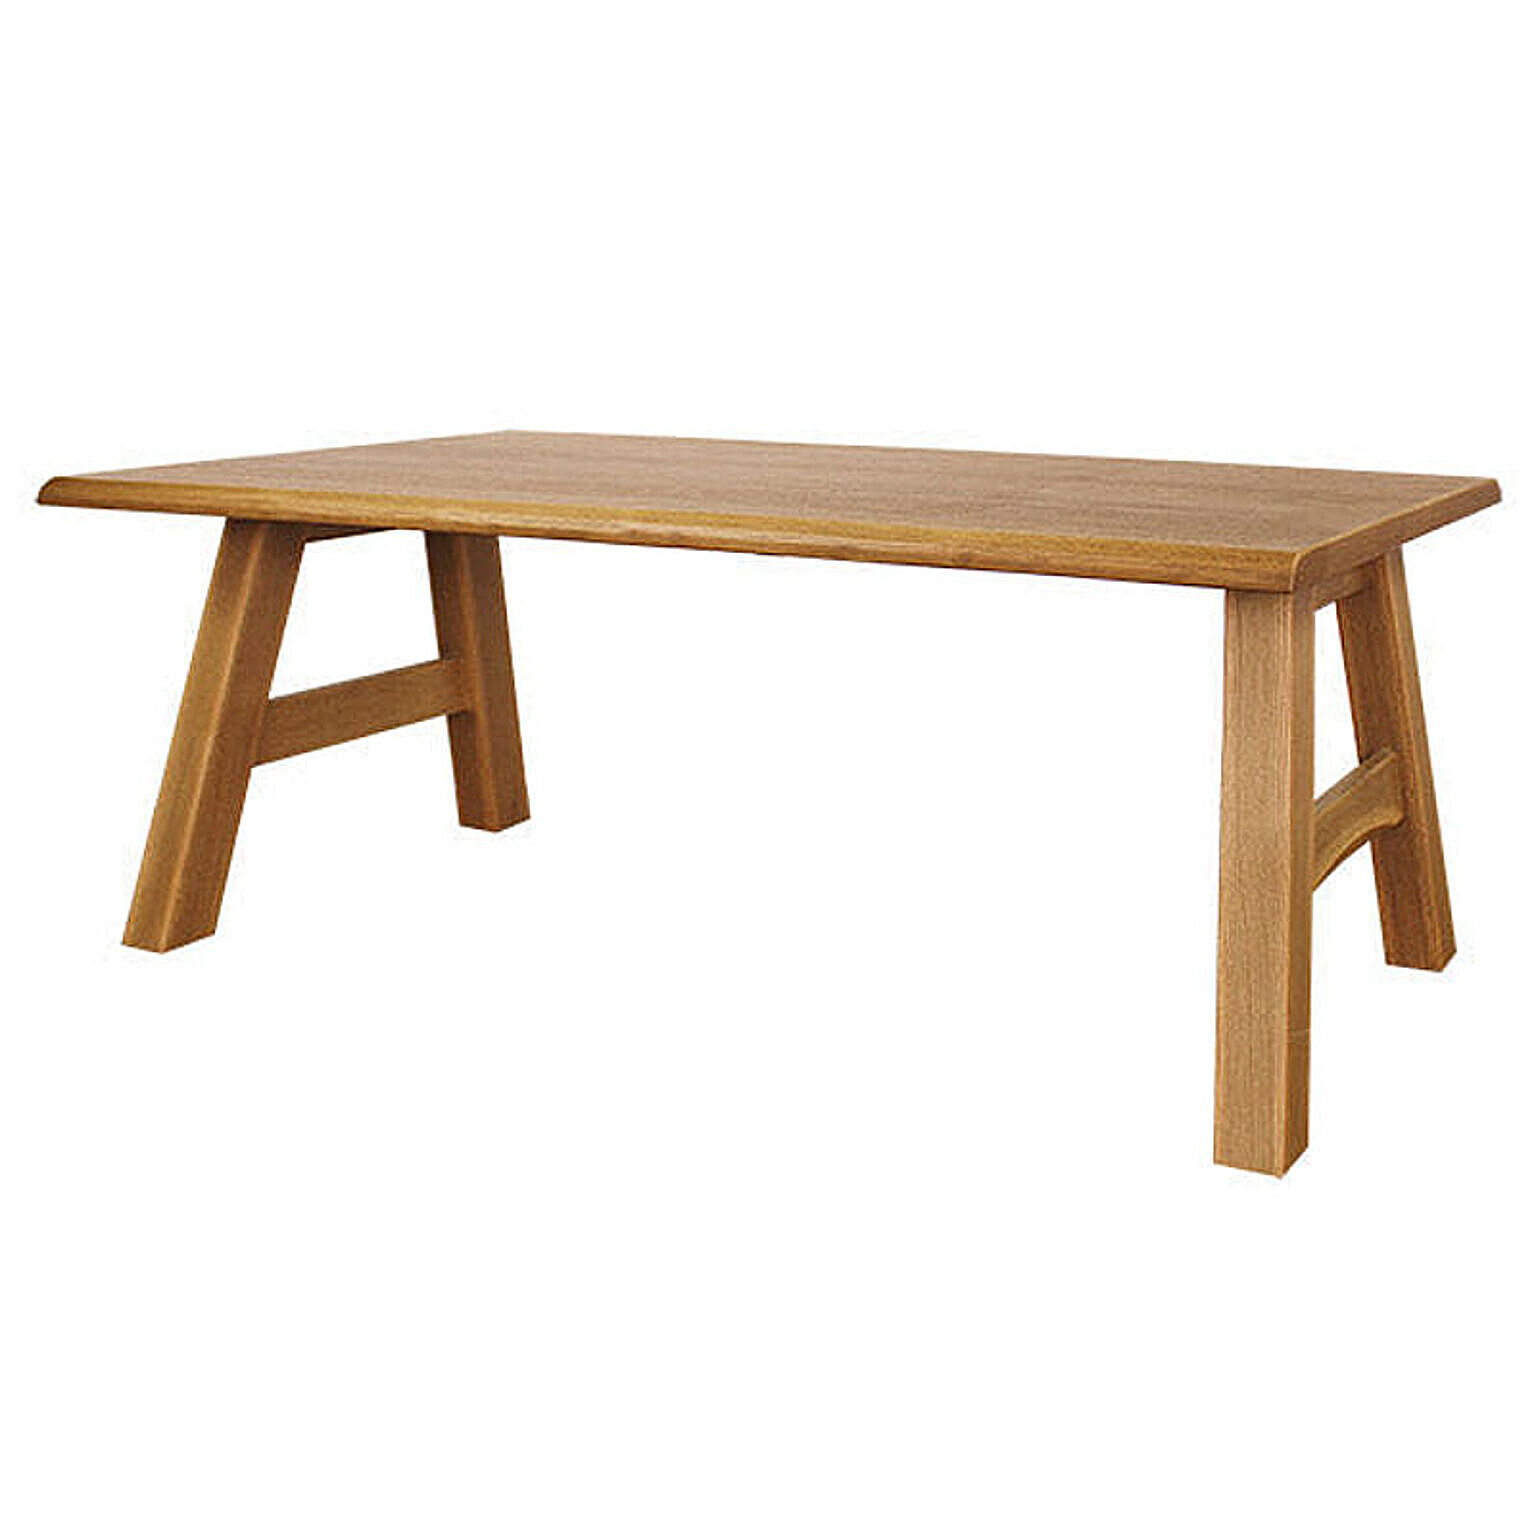 ダイニングテーブル 幅180cm 天然木オーク材 節あり 木製 長方形 和テイスト ナチュラル シンプル カントリー 組立 優樹 ゆうき